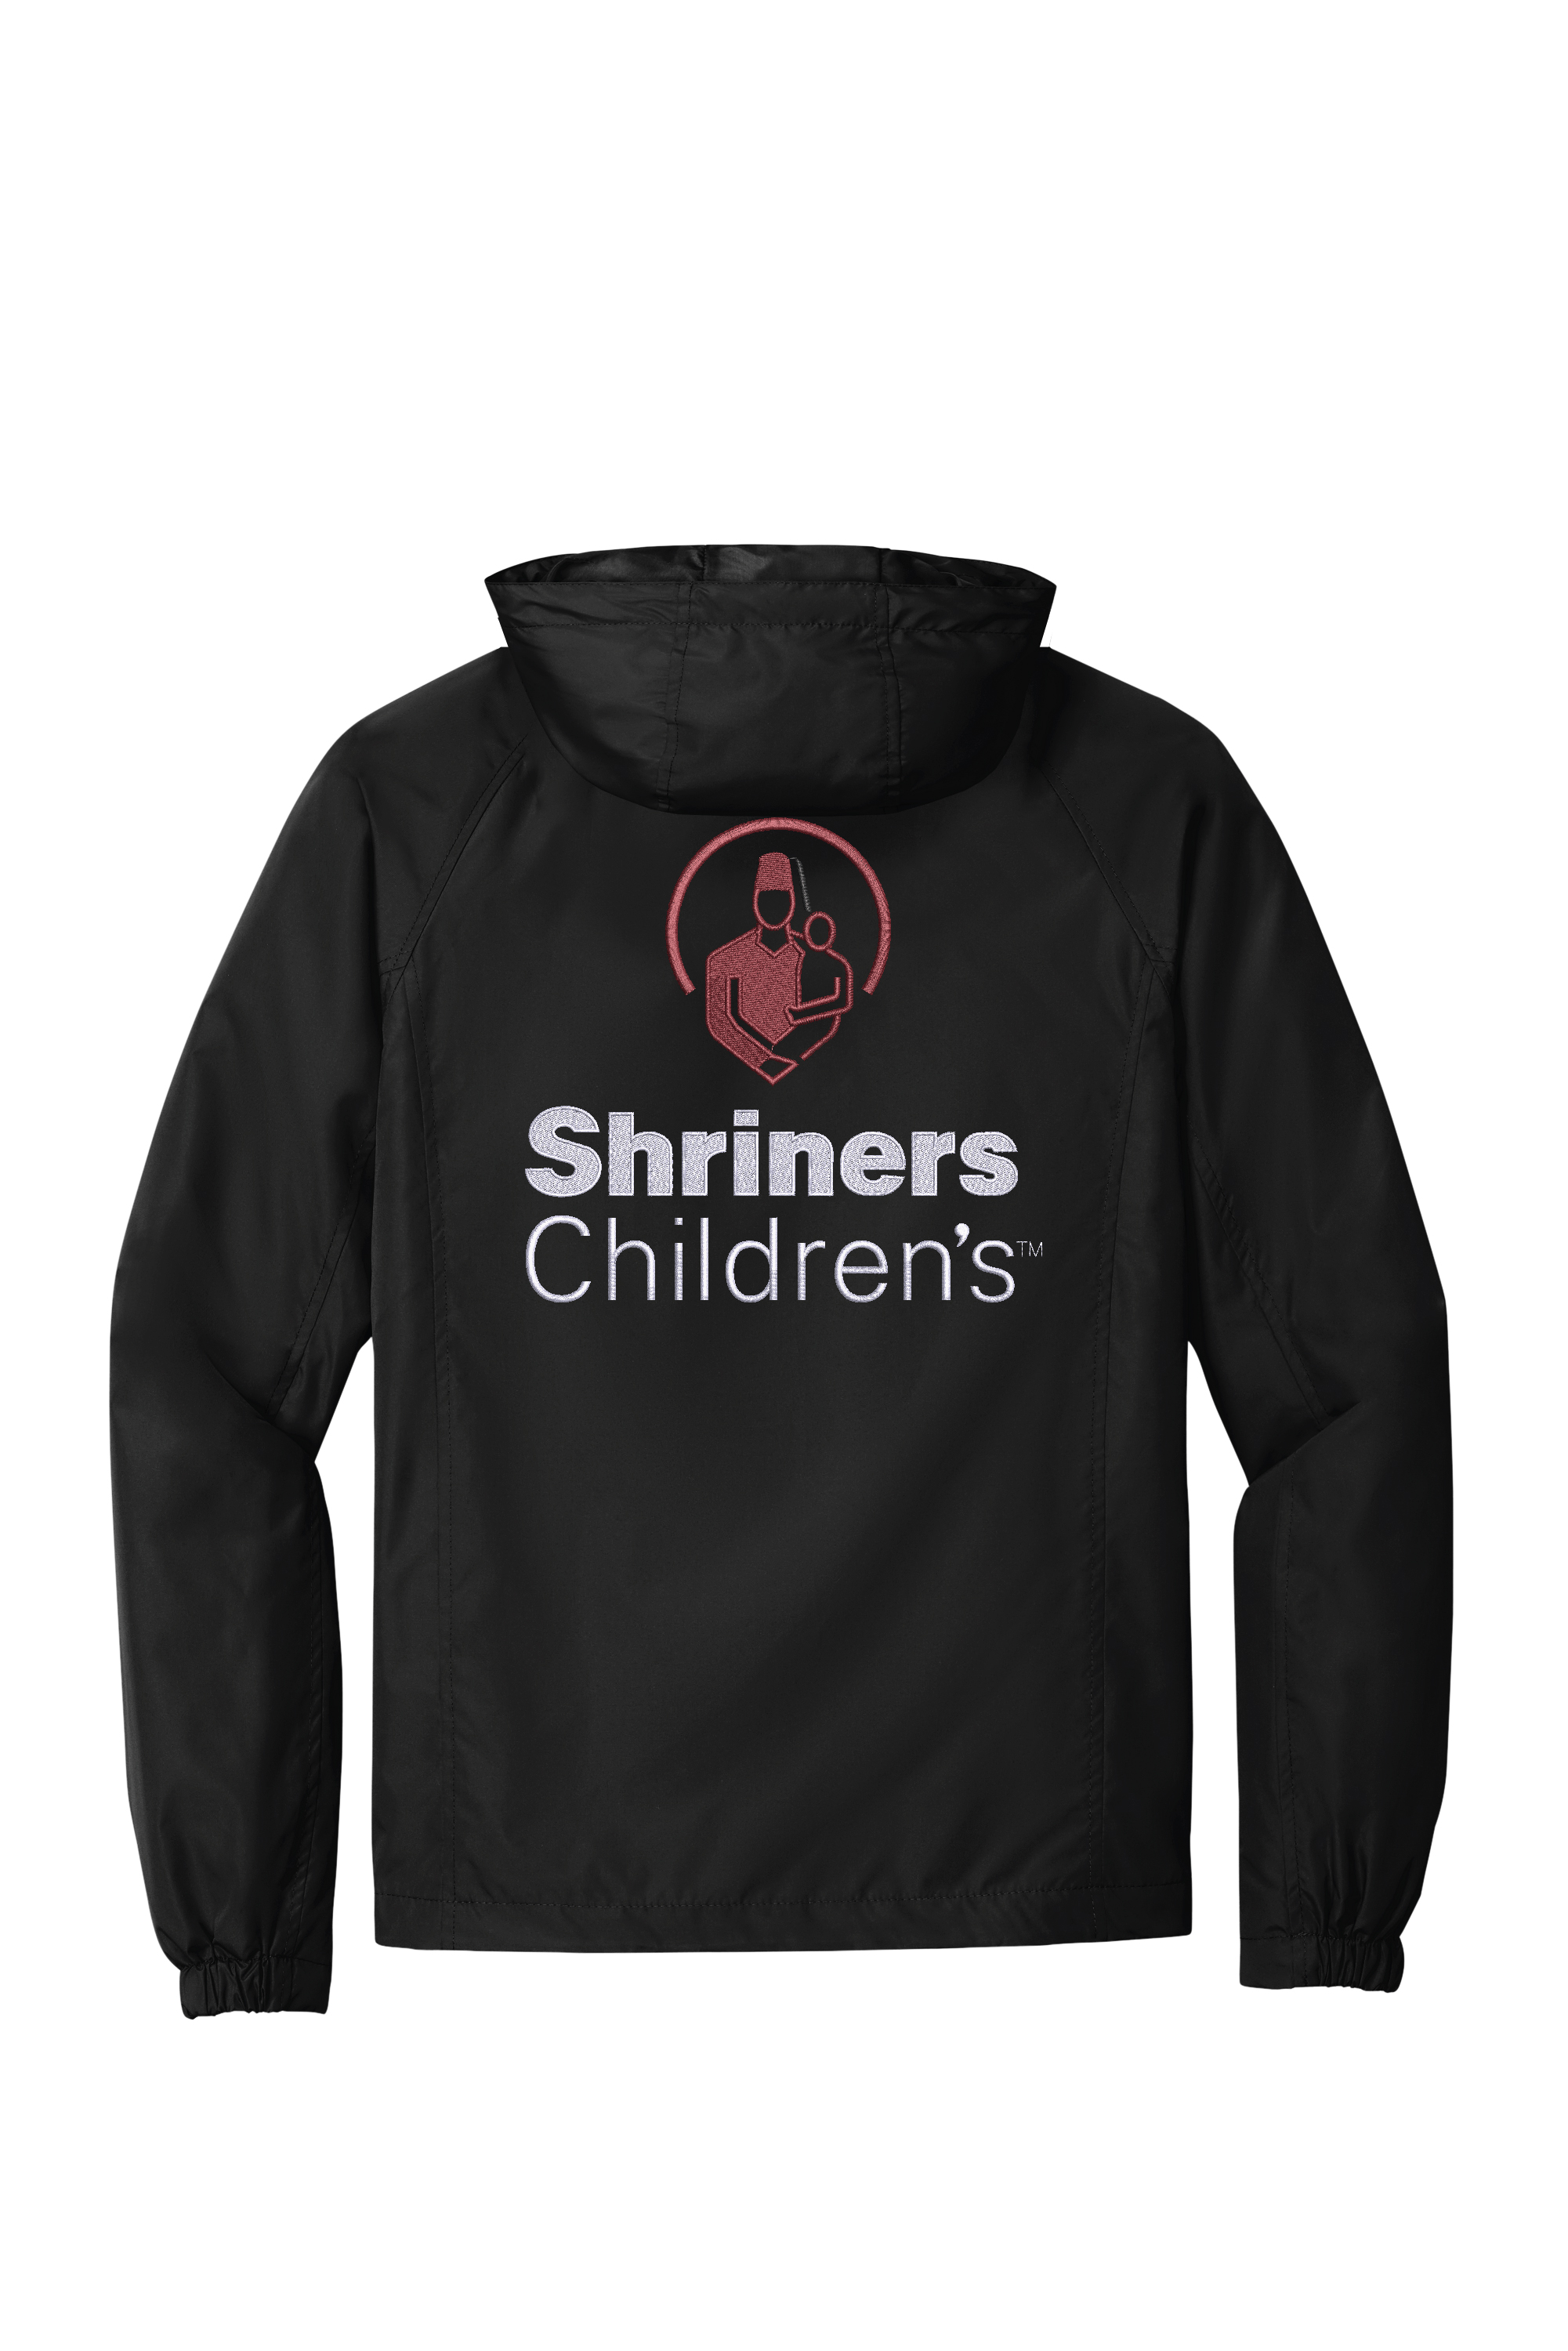 Shriners Childrens Jst73 Black Flat Back